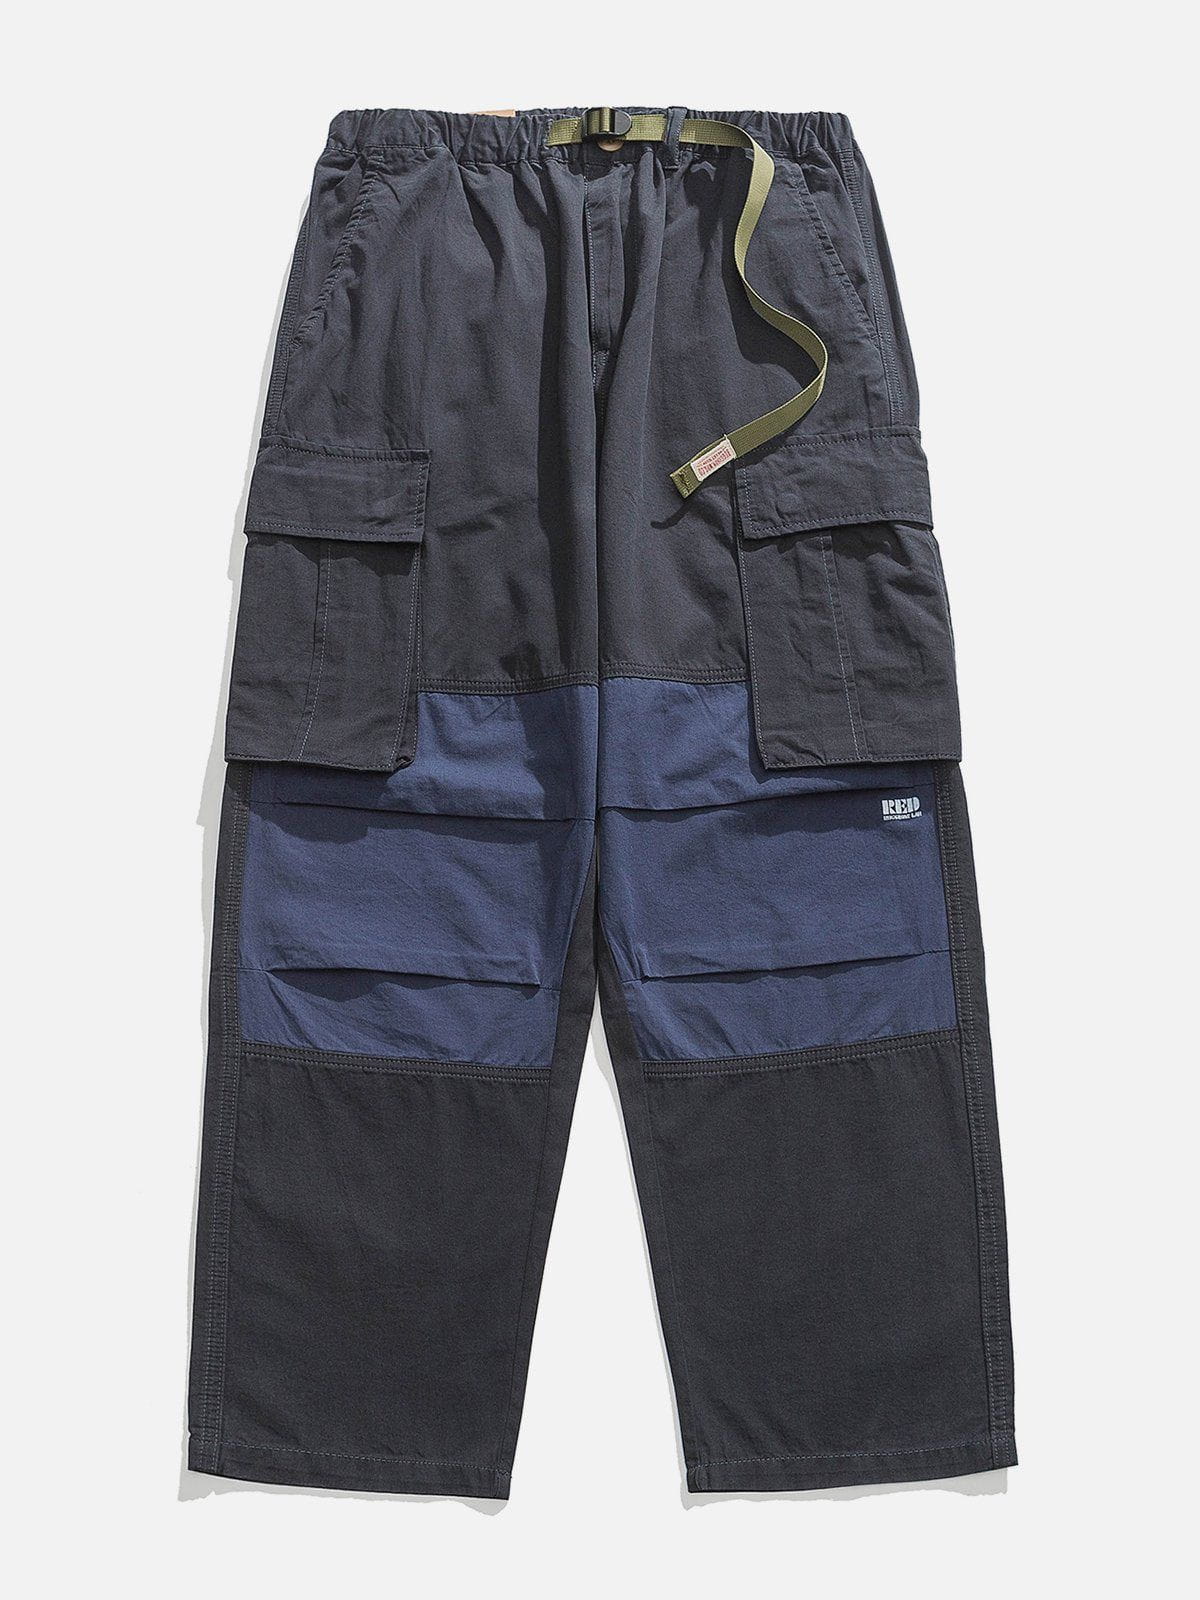 Eprezzy® - Pockets With Flap Cargo Pants Streetwear Fashion - eprezzy.com